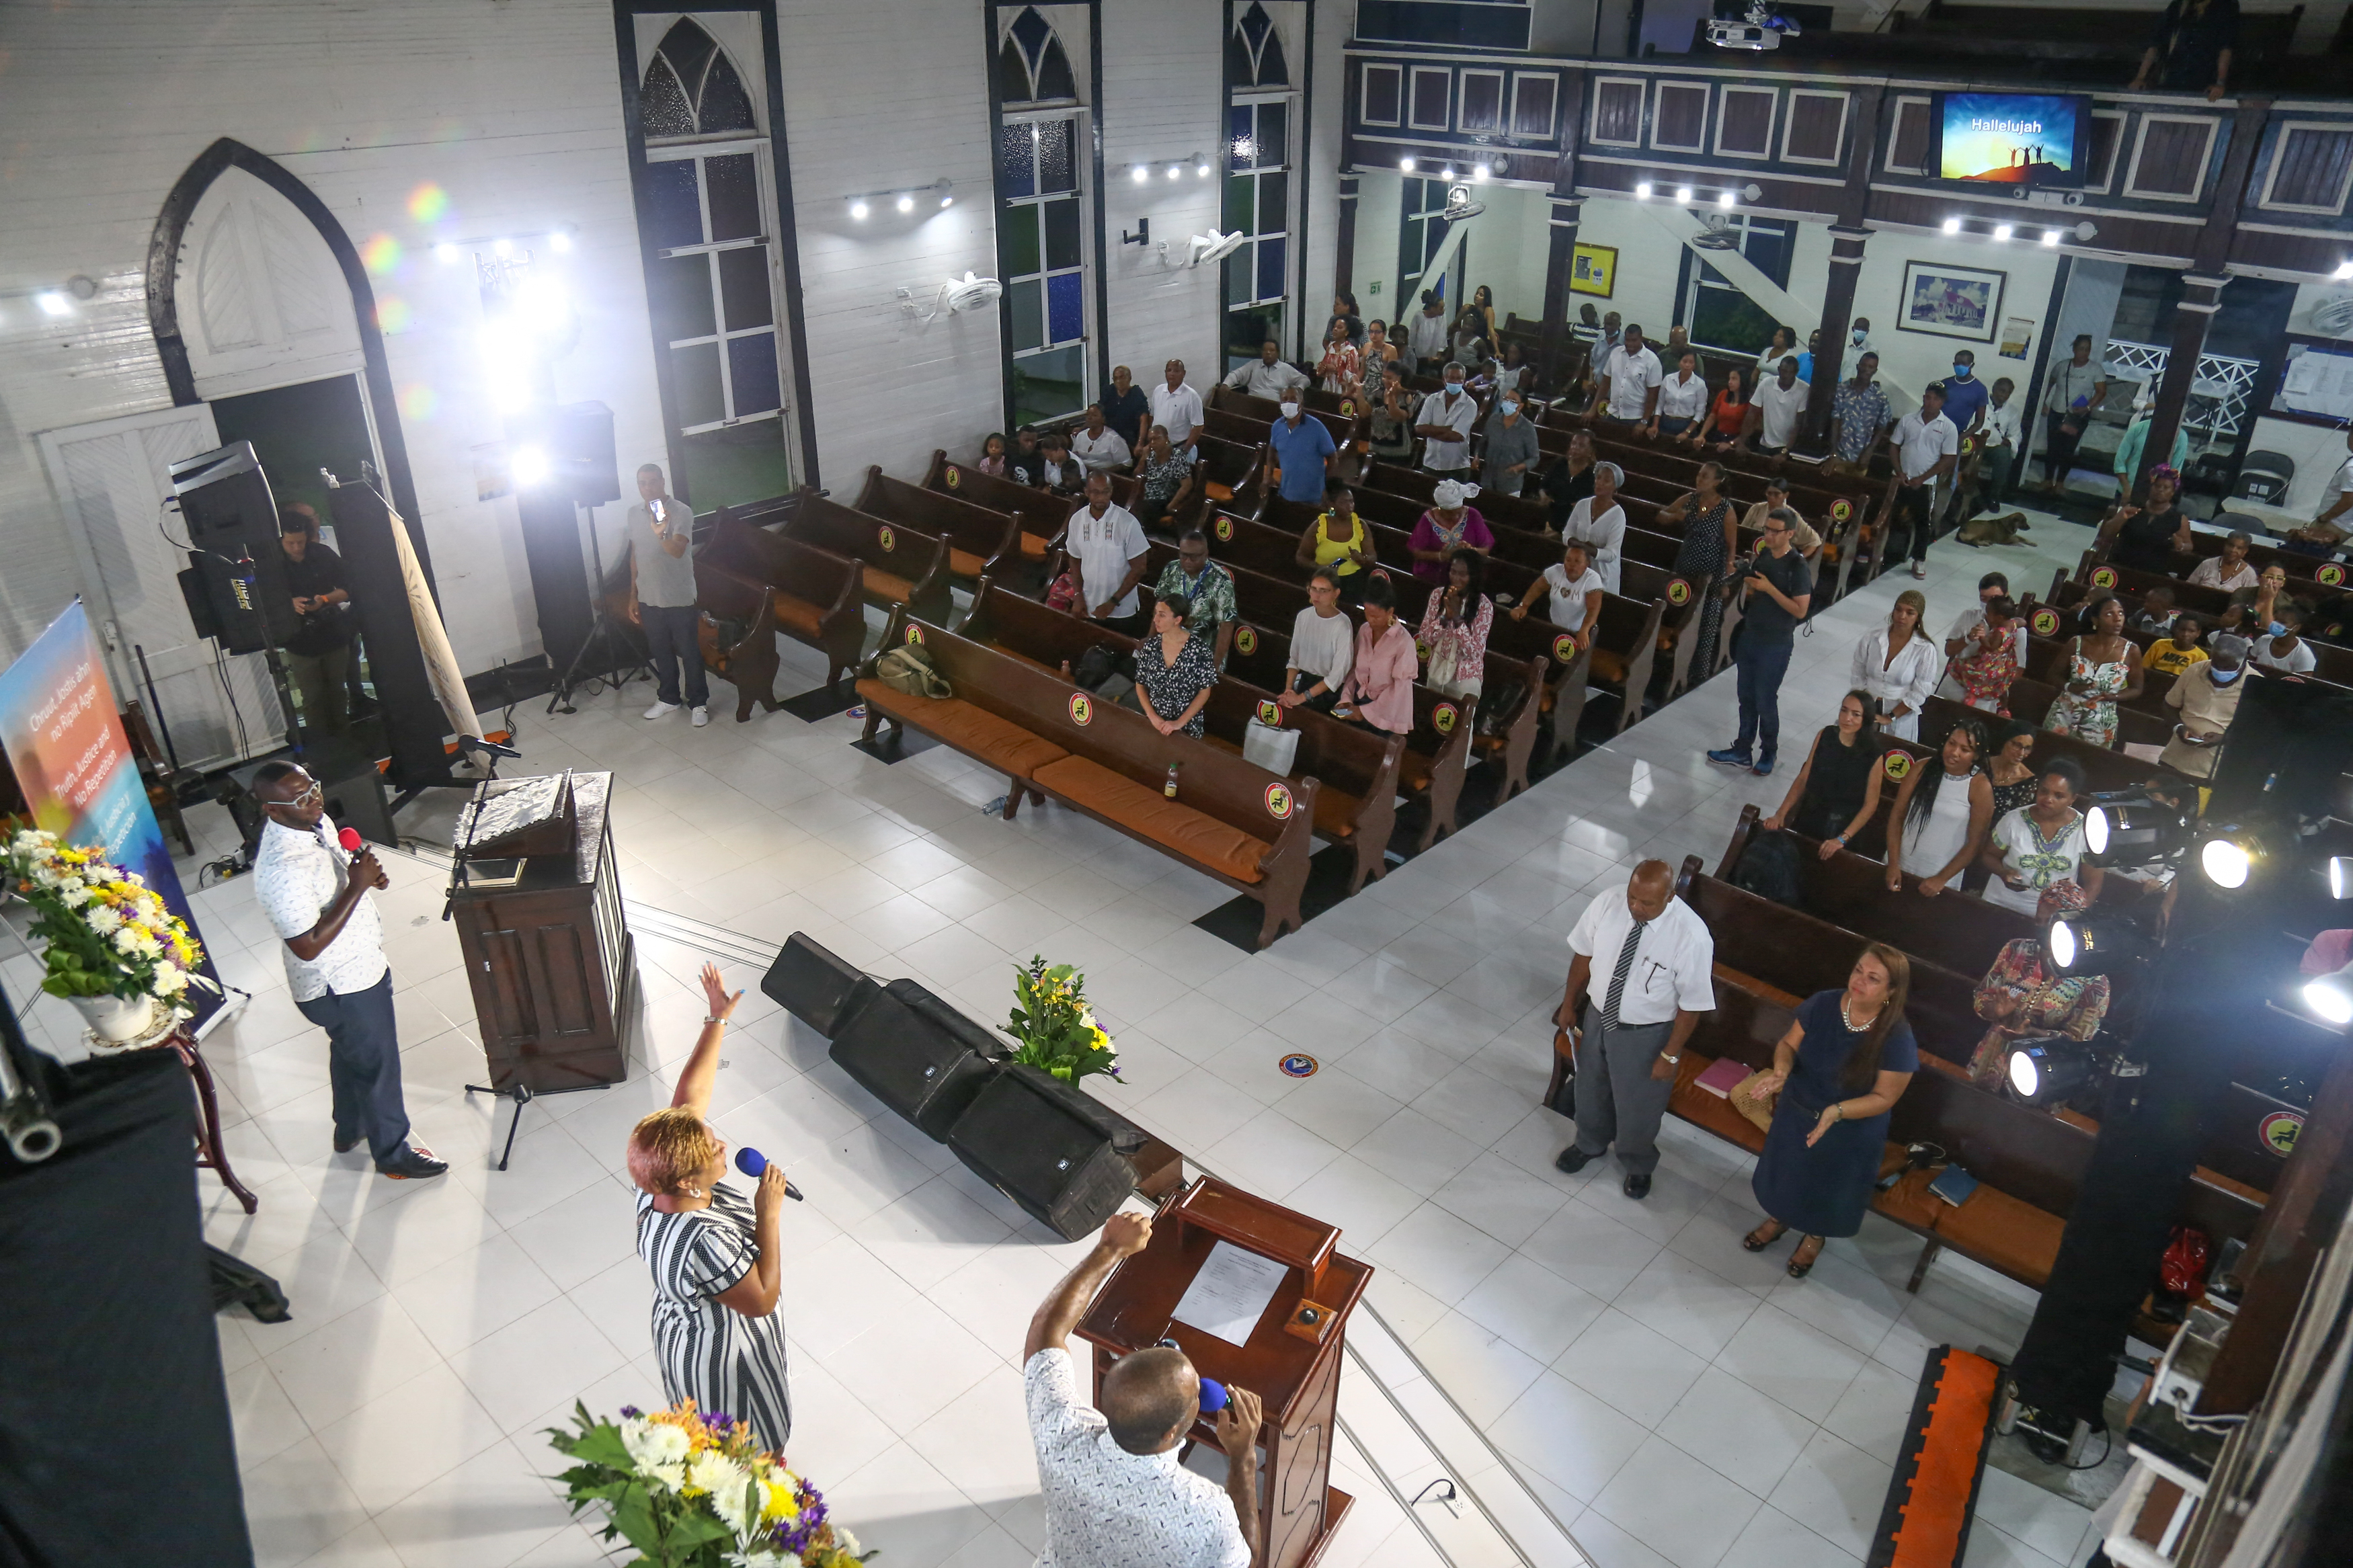 Réunion de personnes dans une église en Colombie